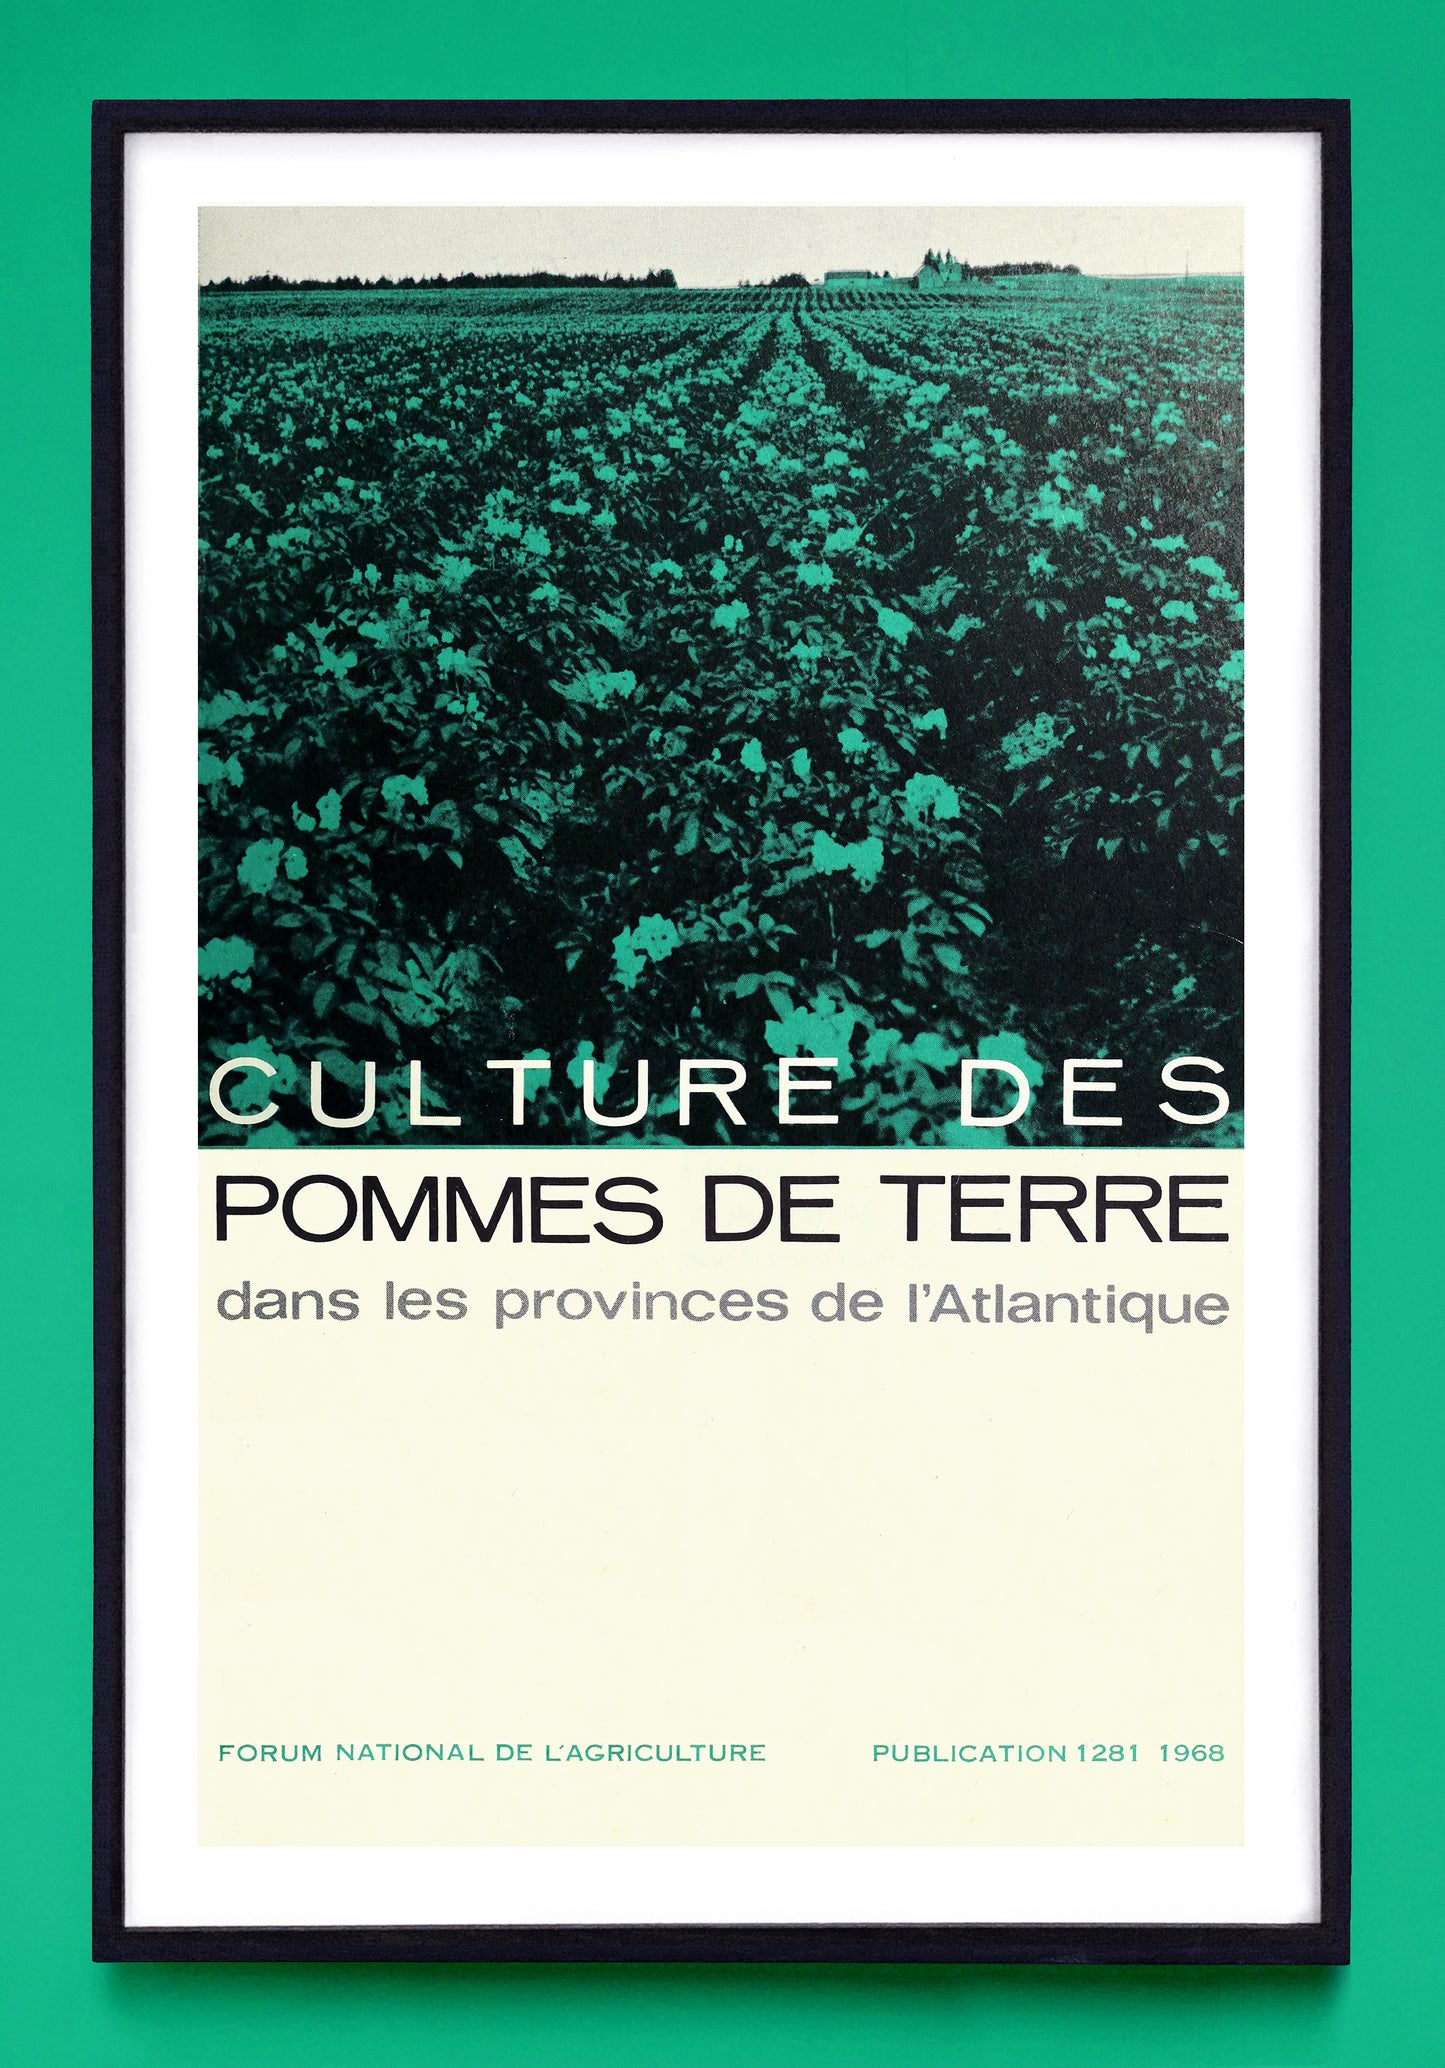 "Potato Growing in the Atlantic Provinces" and "Culture des Pommes de Terre dans les Provinces de l'Atlantique" prints (1967, 1968)